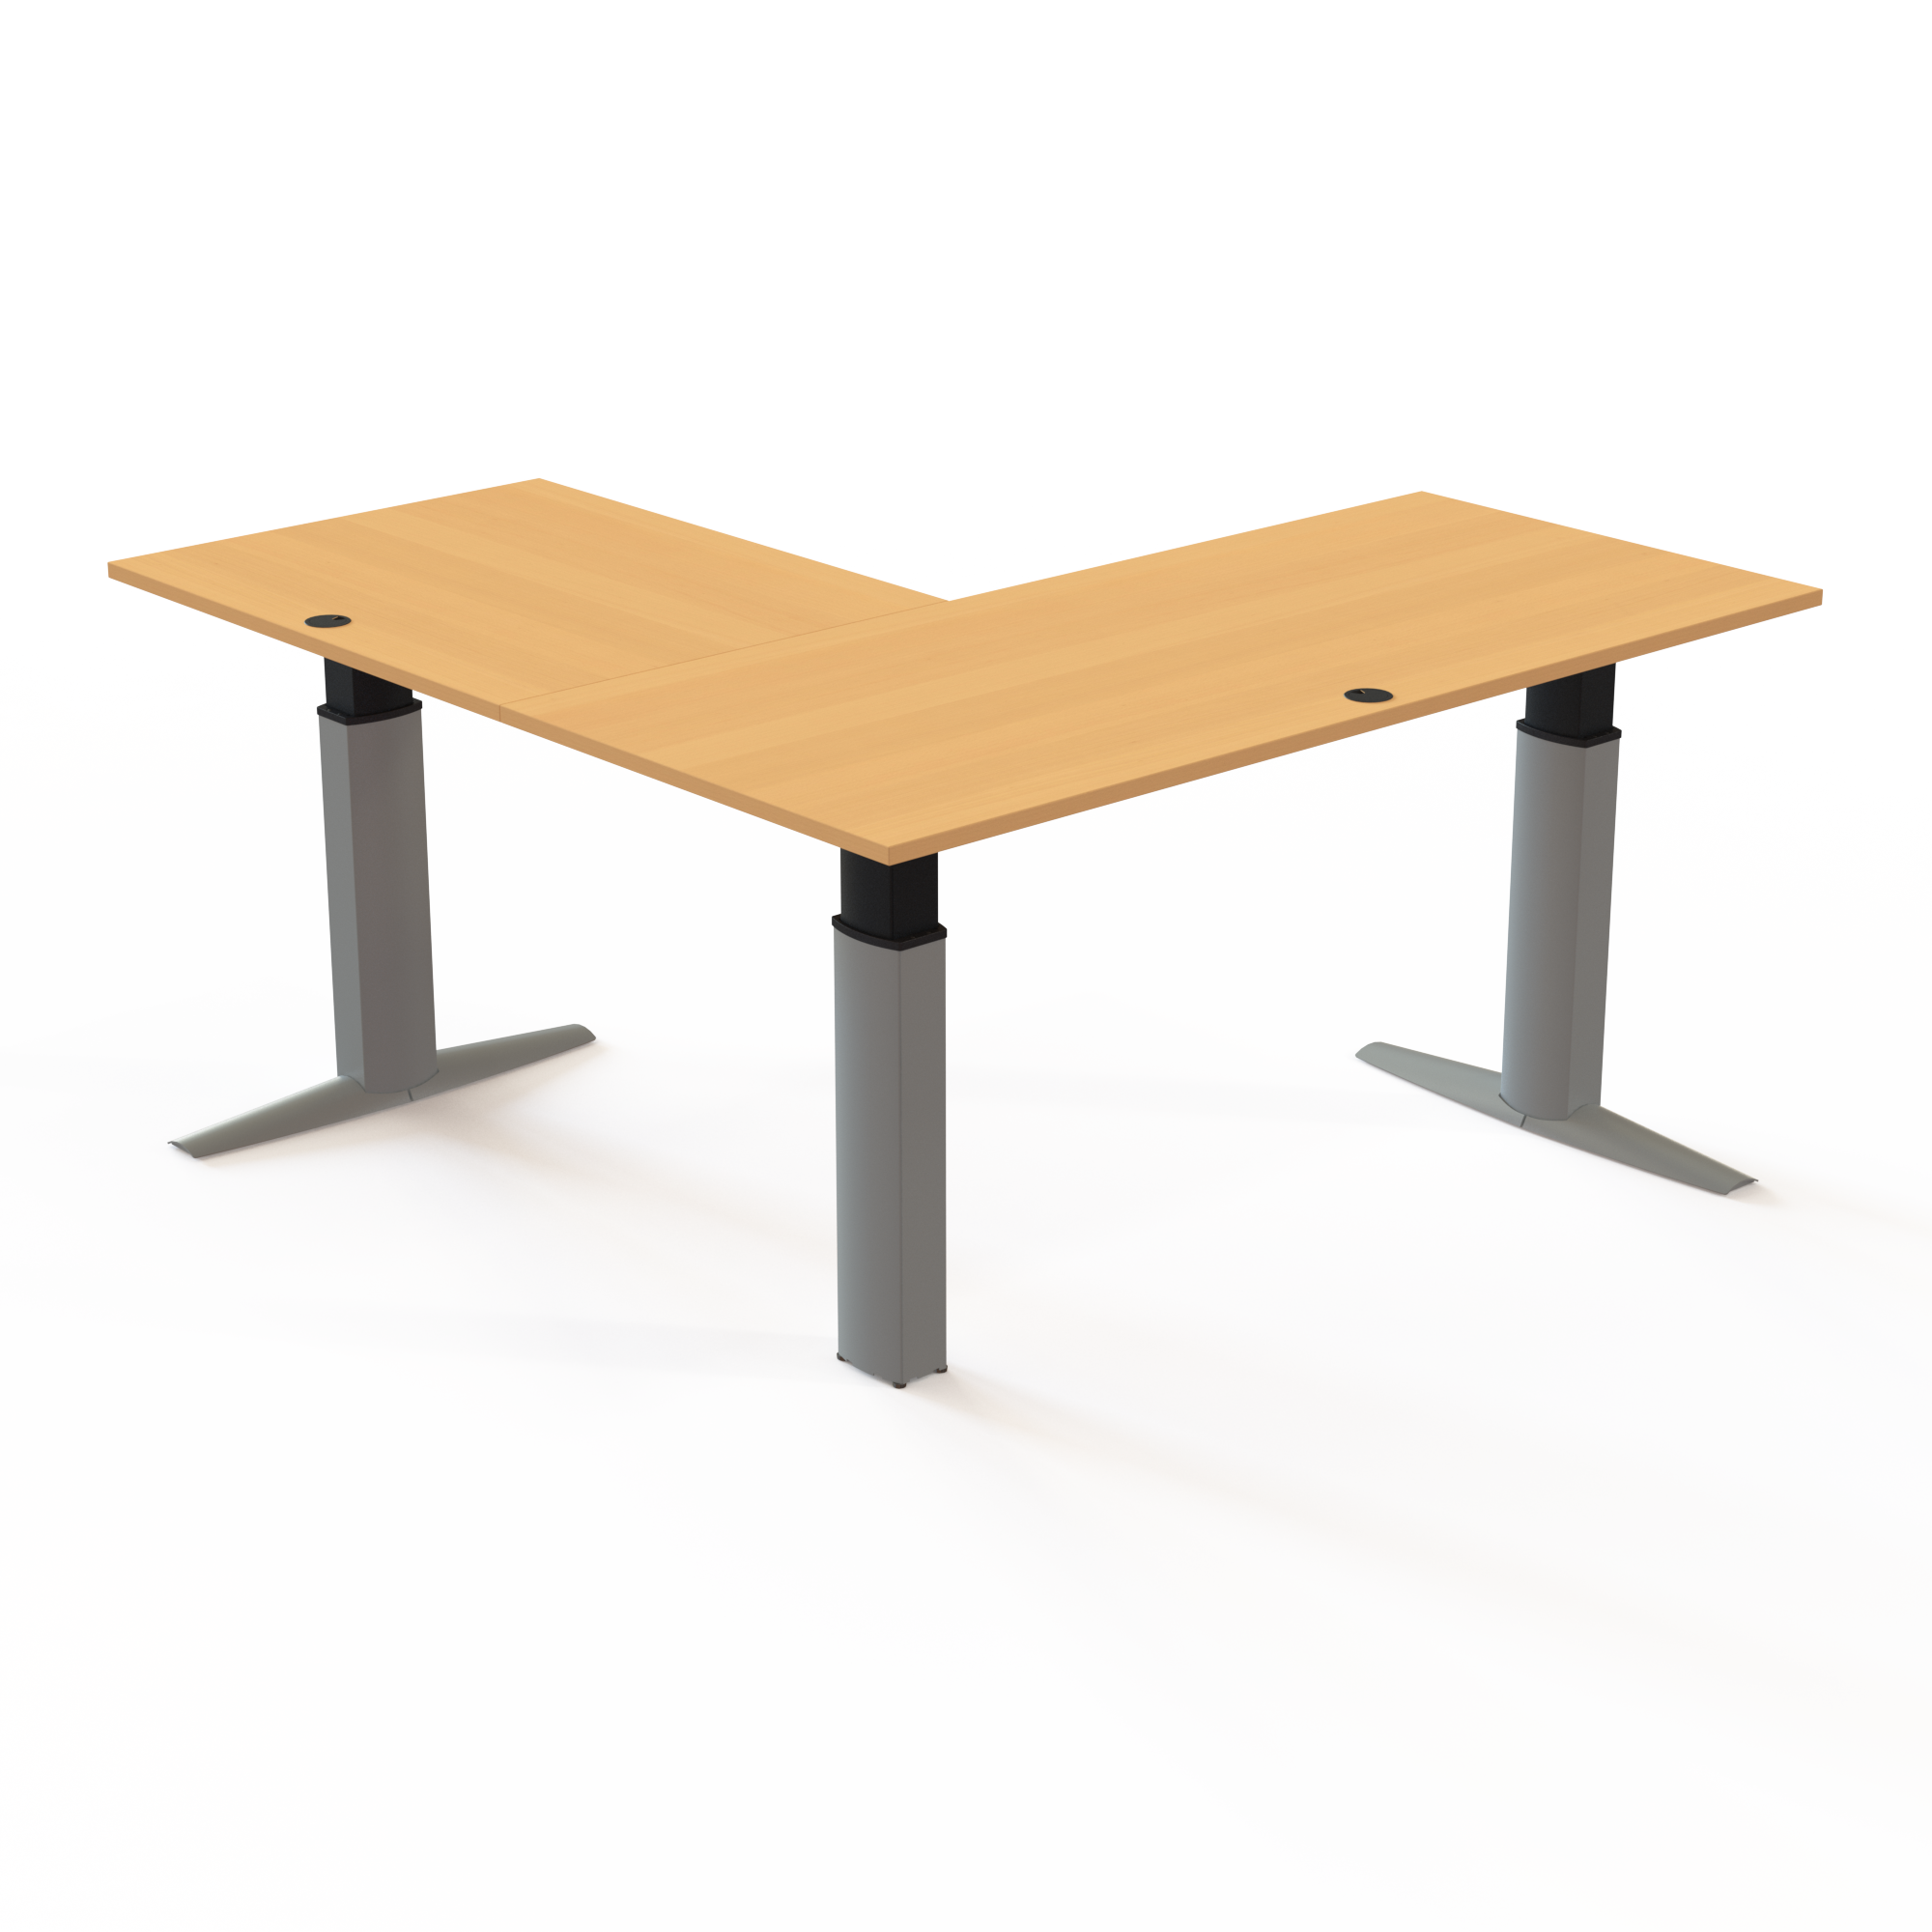 Schreibtisch steh/sitz | 180x180 cm | Buche mit silbernem Gestell